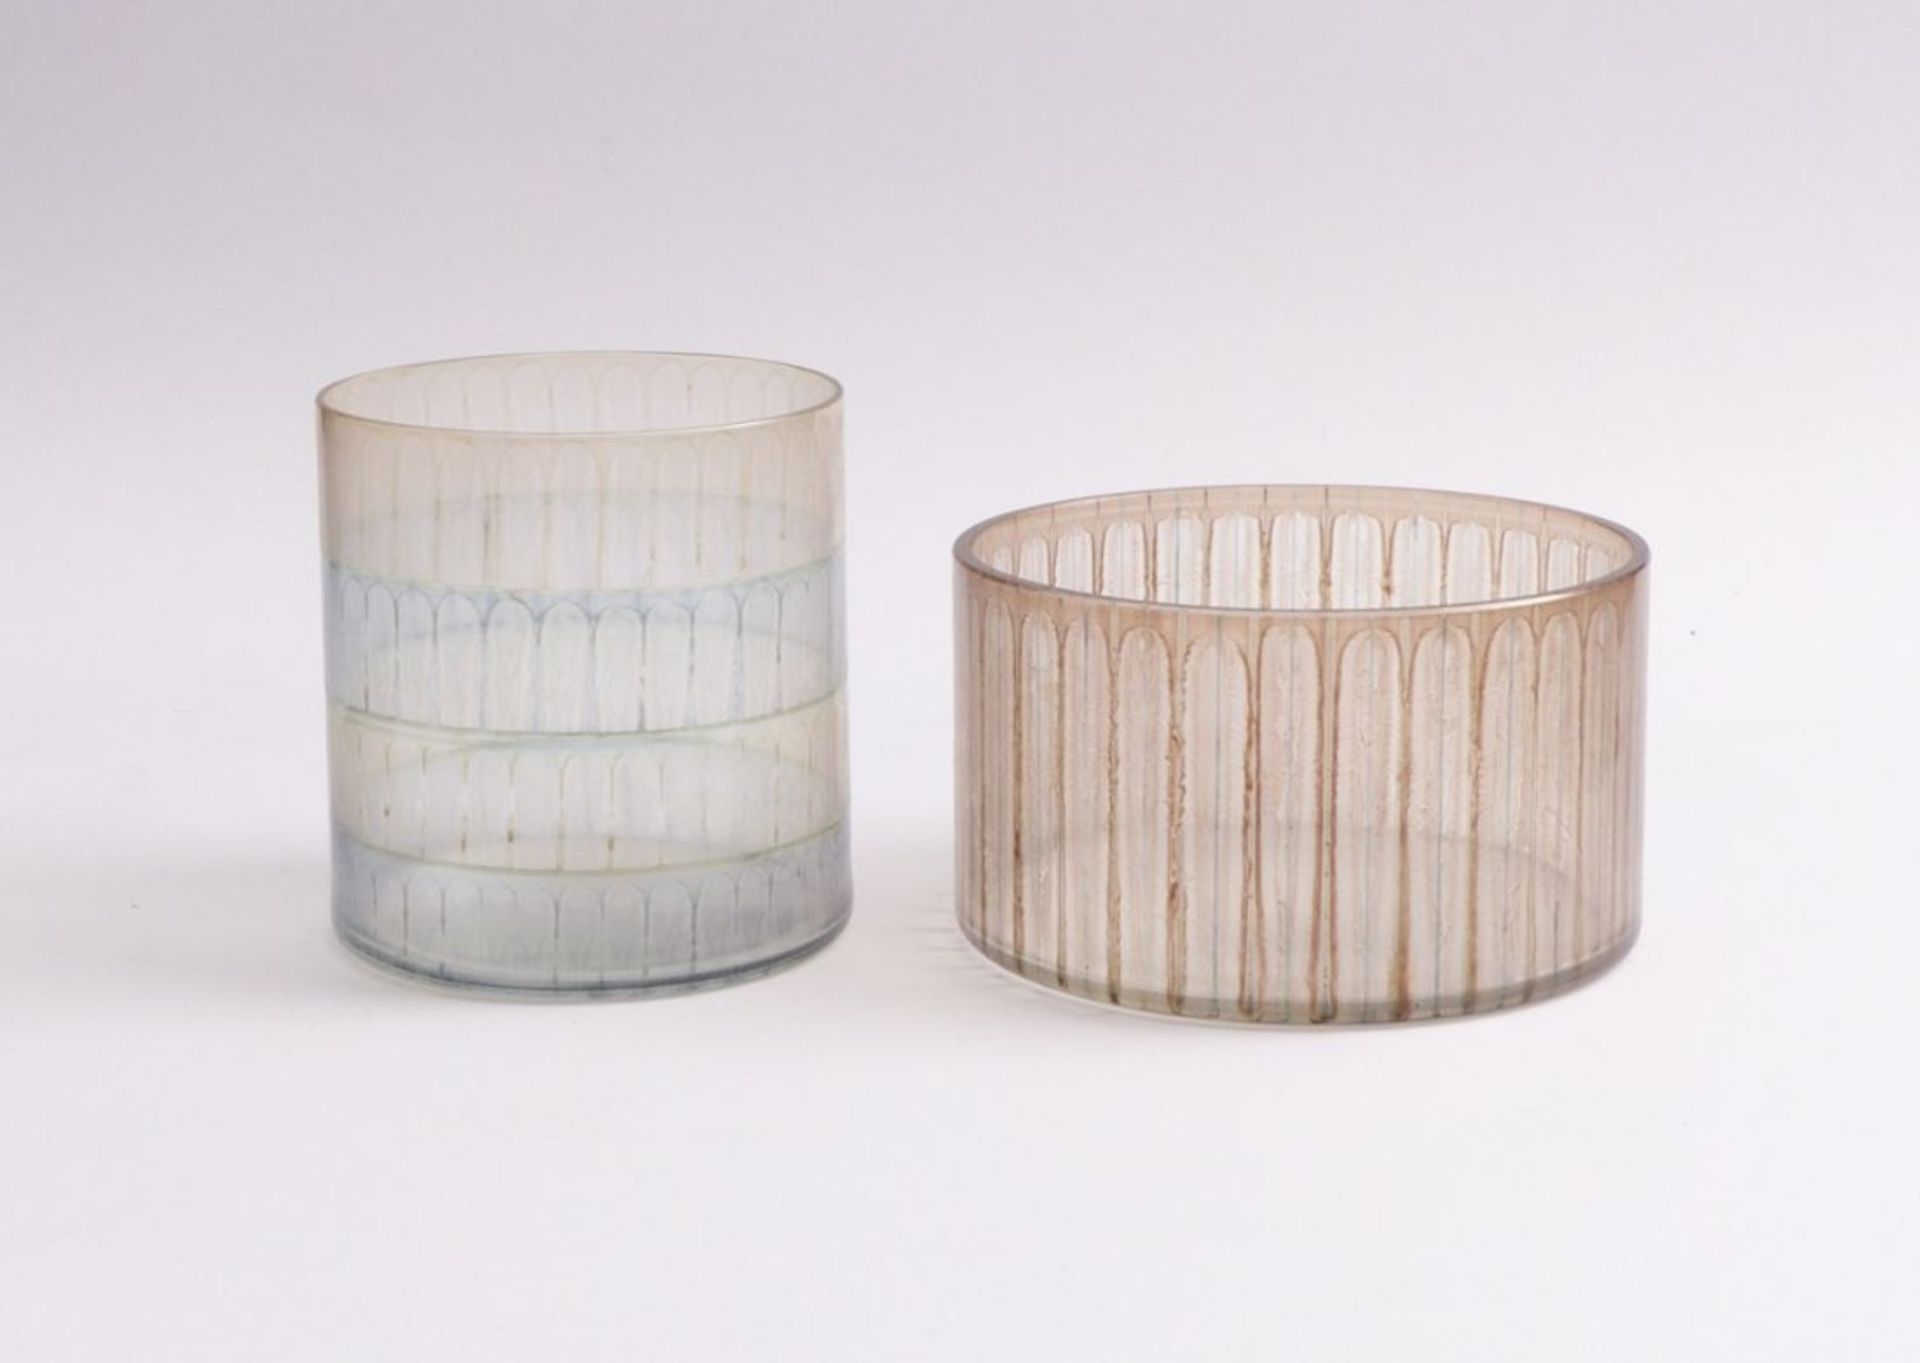 Moje-Wohlgemuth, Isgard (attributed)Two bowls(Gumbinnen 1941-2018 Hamburg) Colorless matte glass,